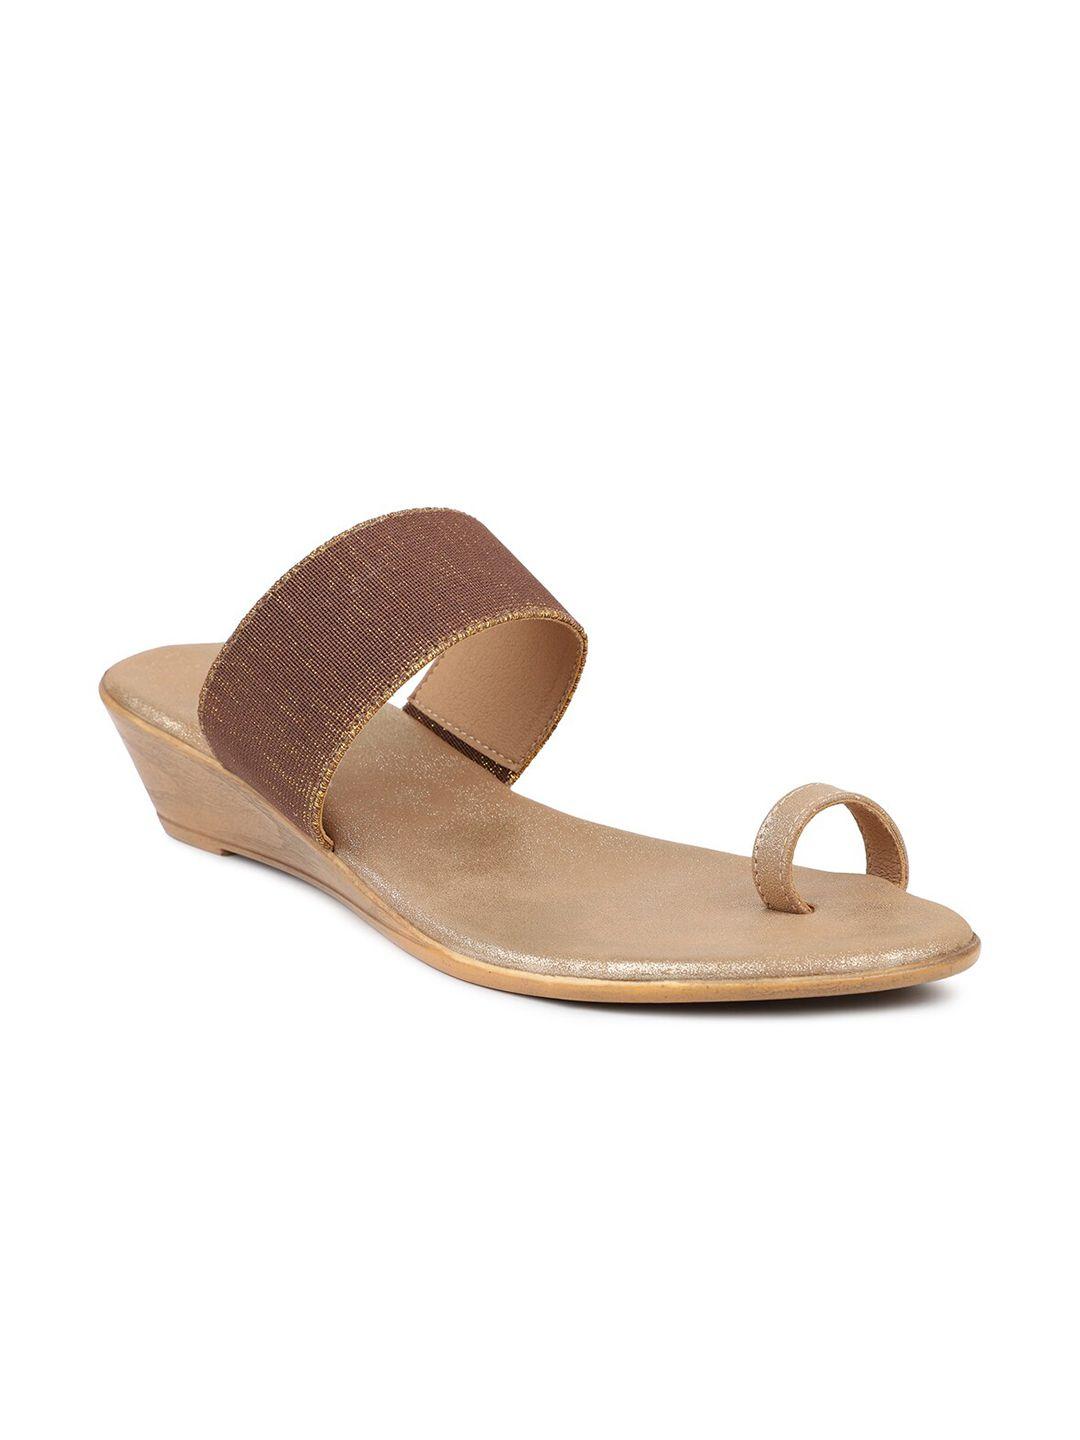 inc-5-gold-toned-ethnic-wedge-heels